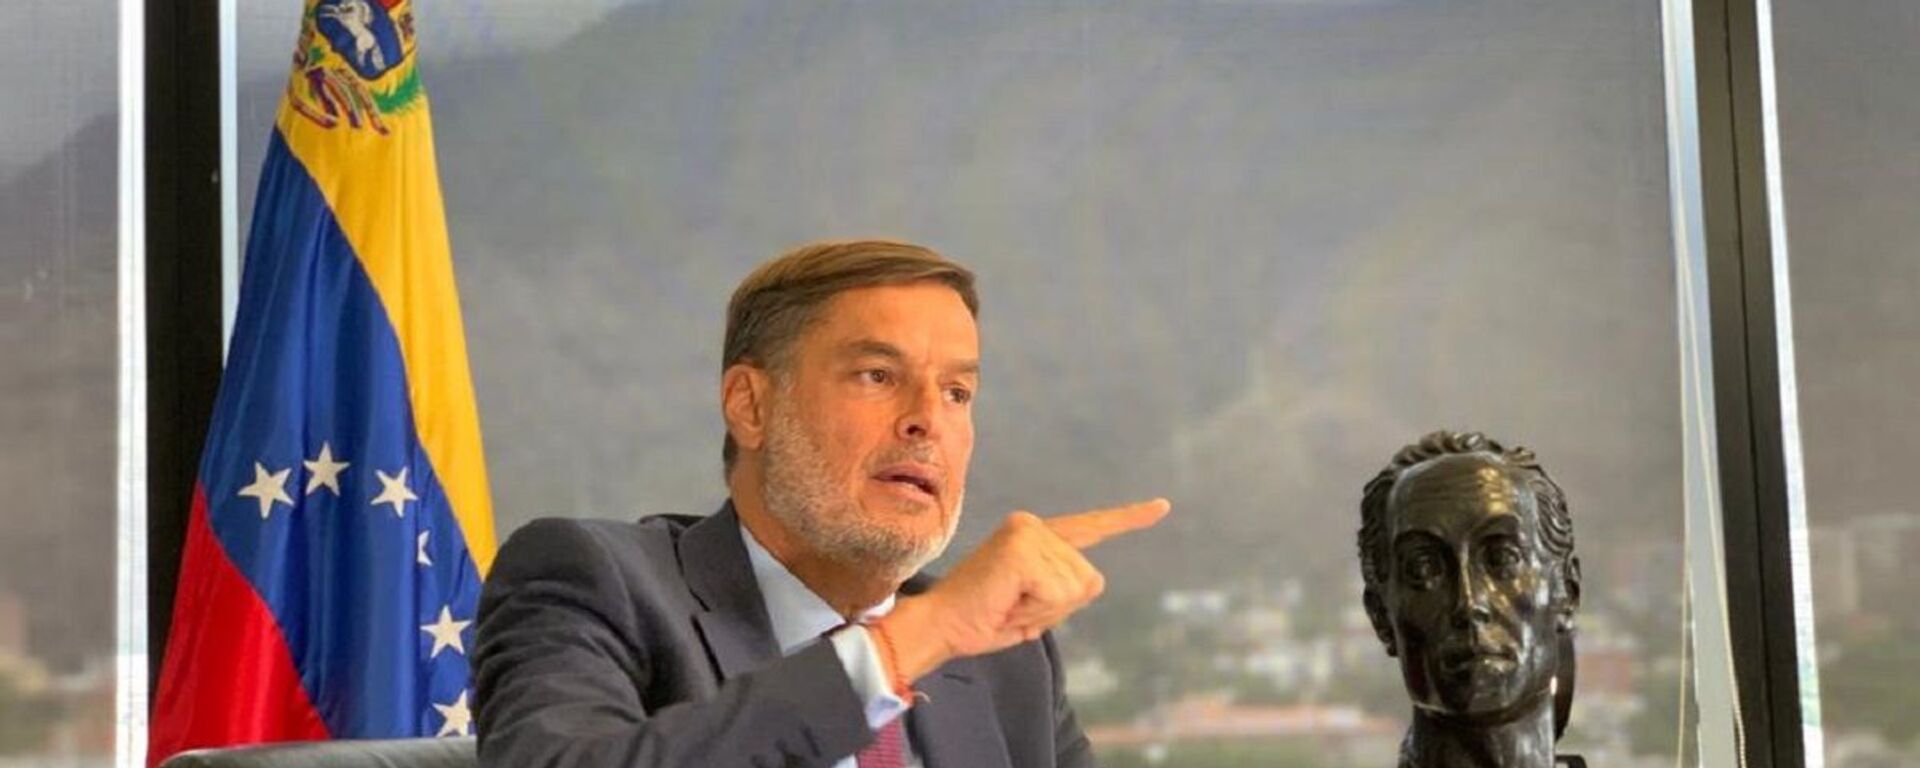 Félix Plasencia, el ministro del Poder Popular para el Turismo y Comercio Exterior de Venezuela - Sputnik Mundo, 1920, 19.08.2021